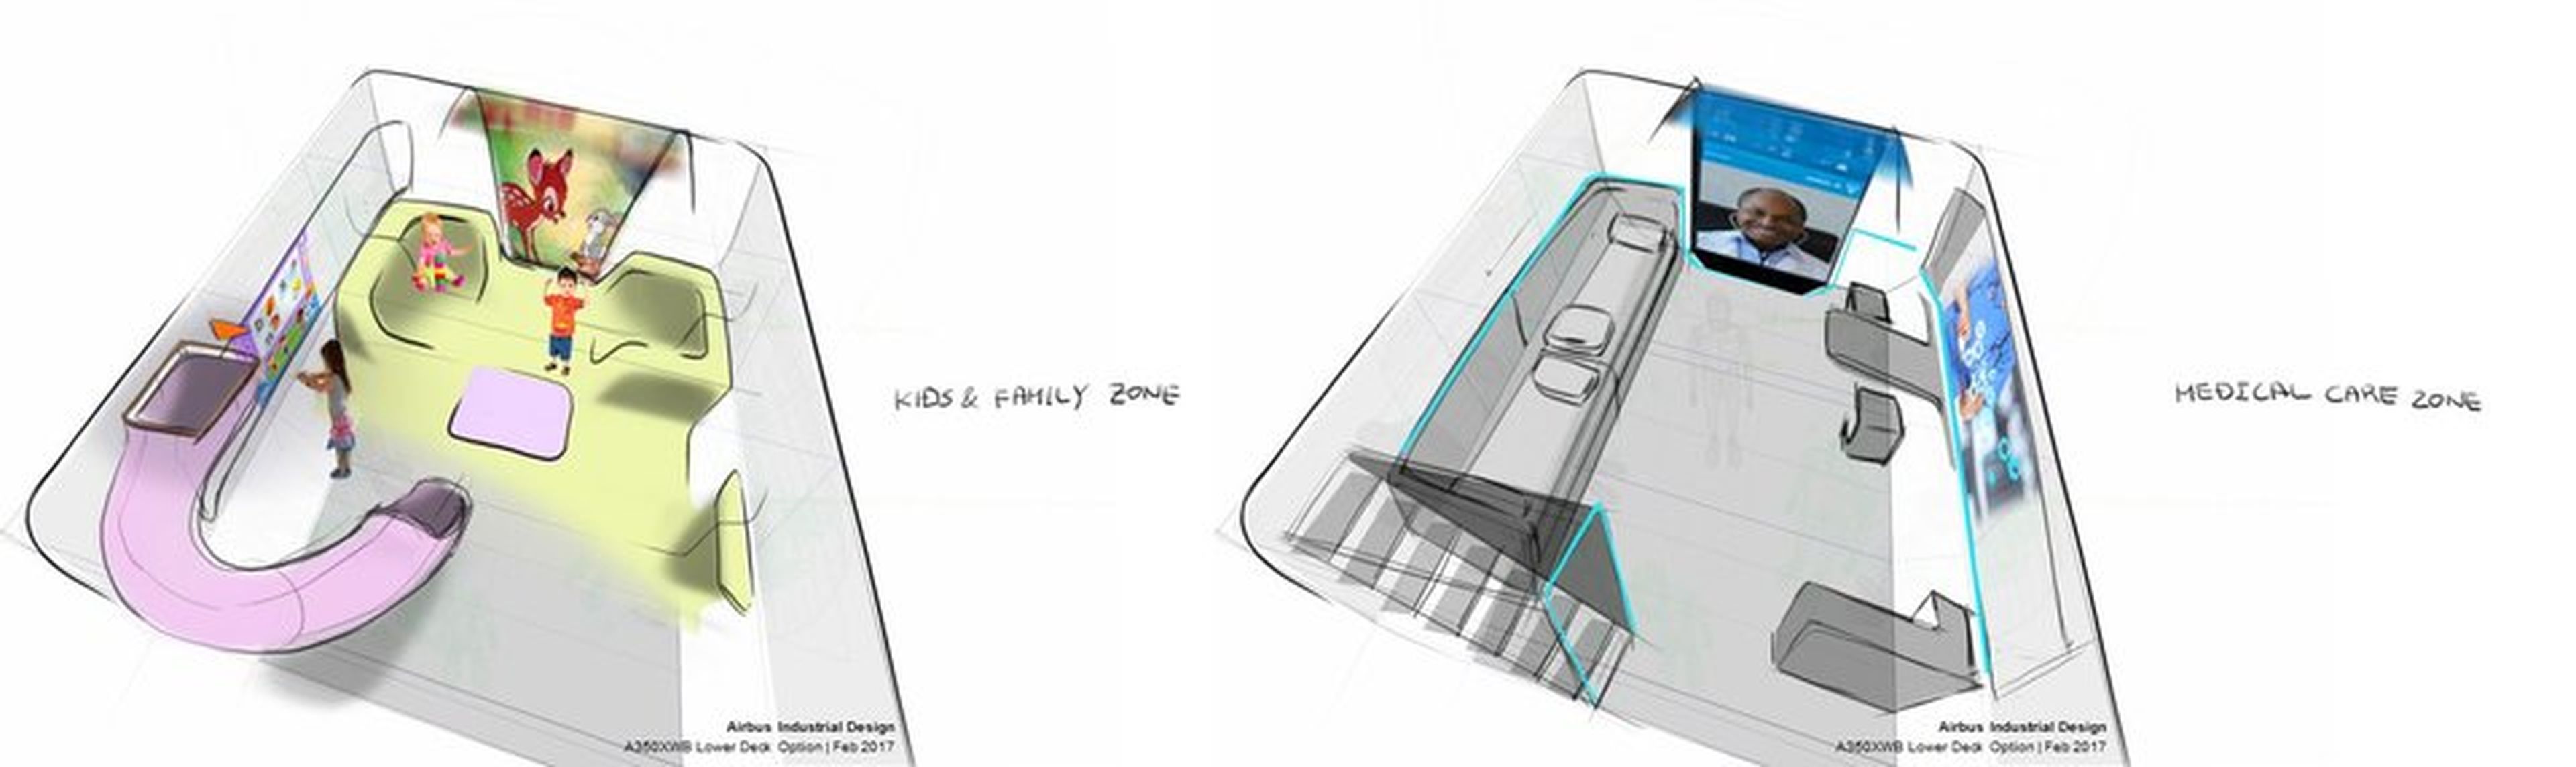 Diseño del espacio infantil y la enfermería del Airbus